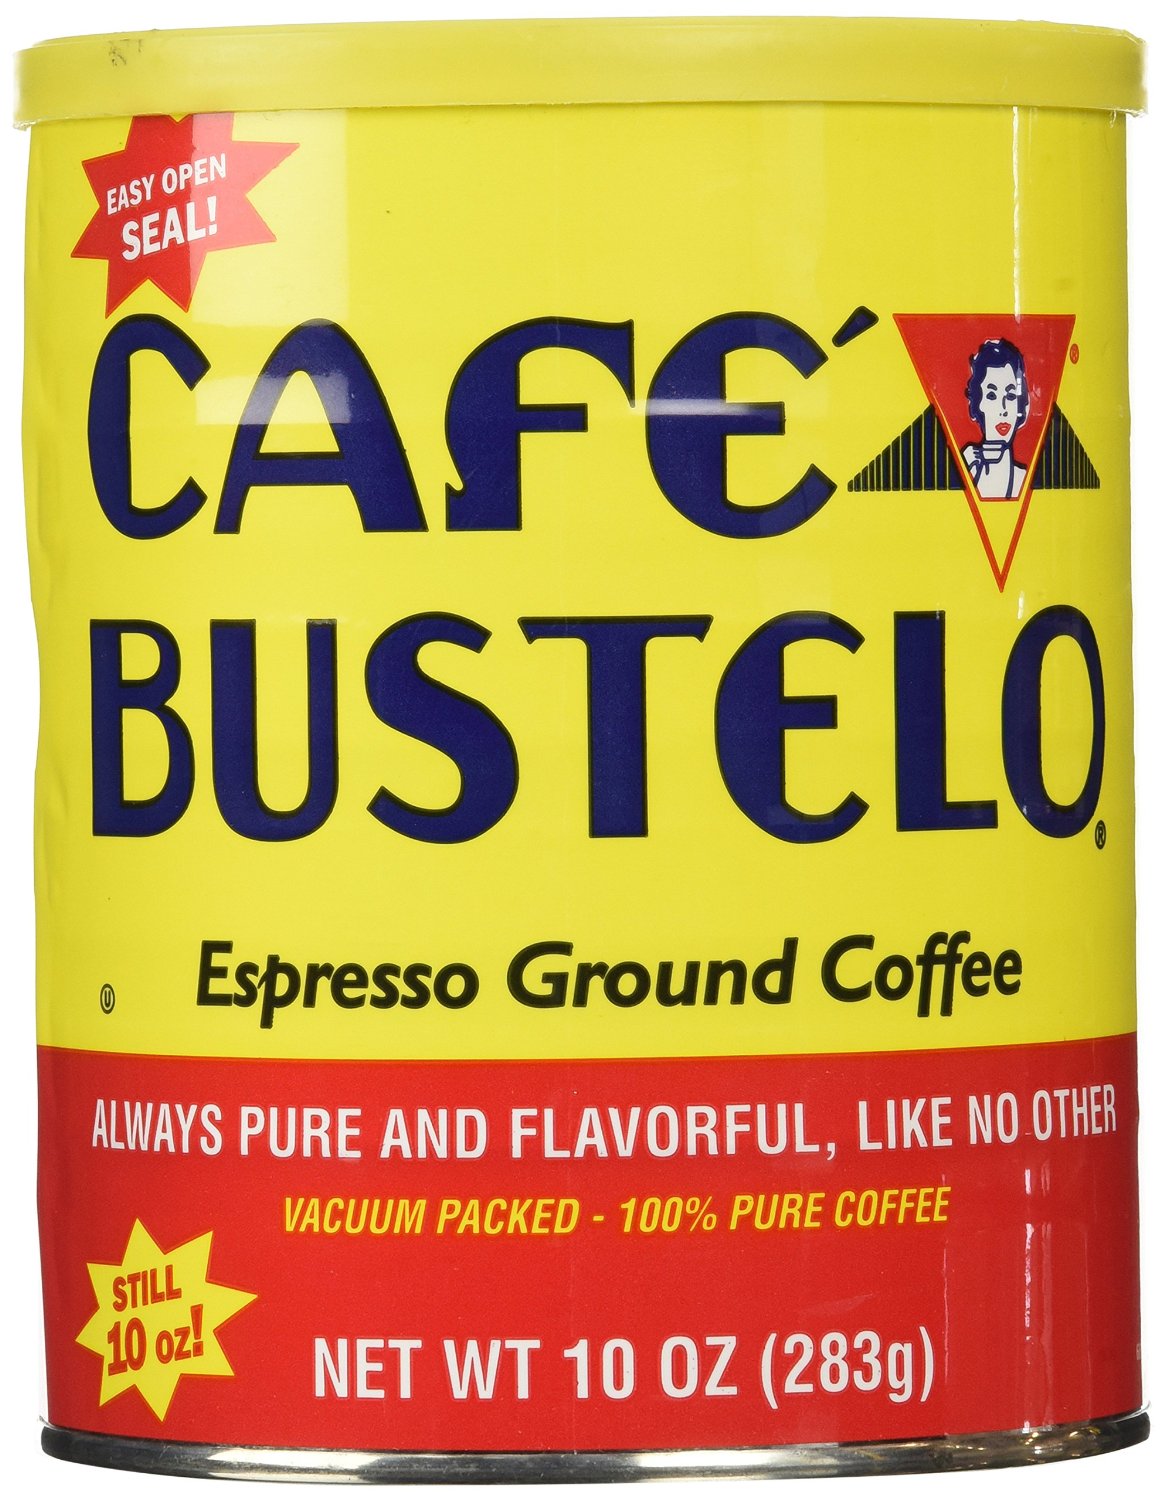 CAFE BUSTELO: Espresso Ground Coffee, 10 oz - Vending Business Solutions